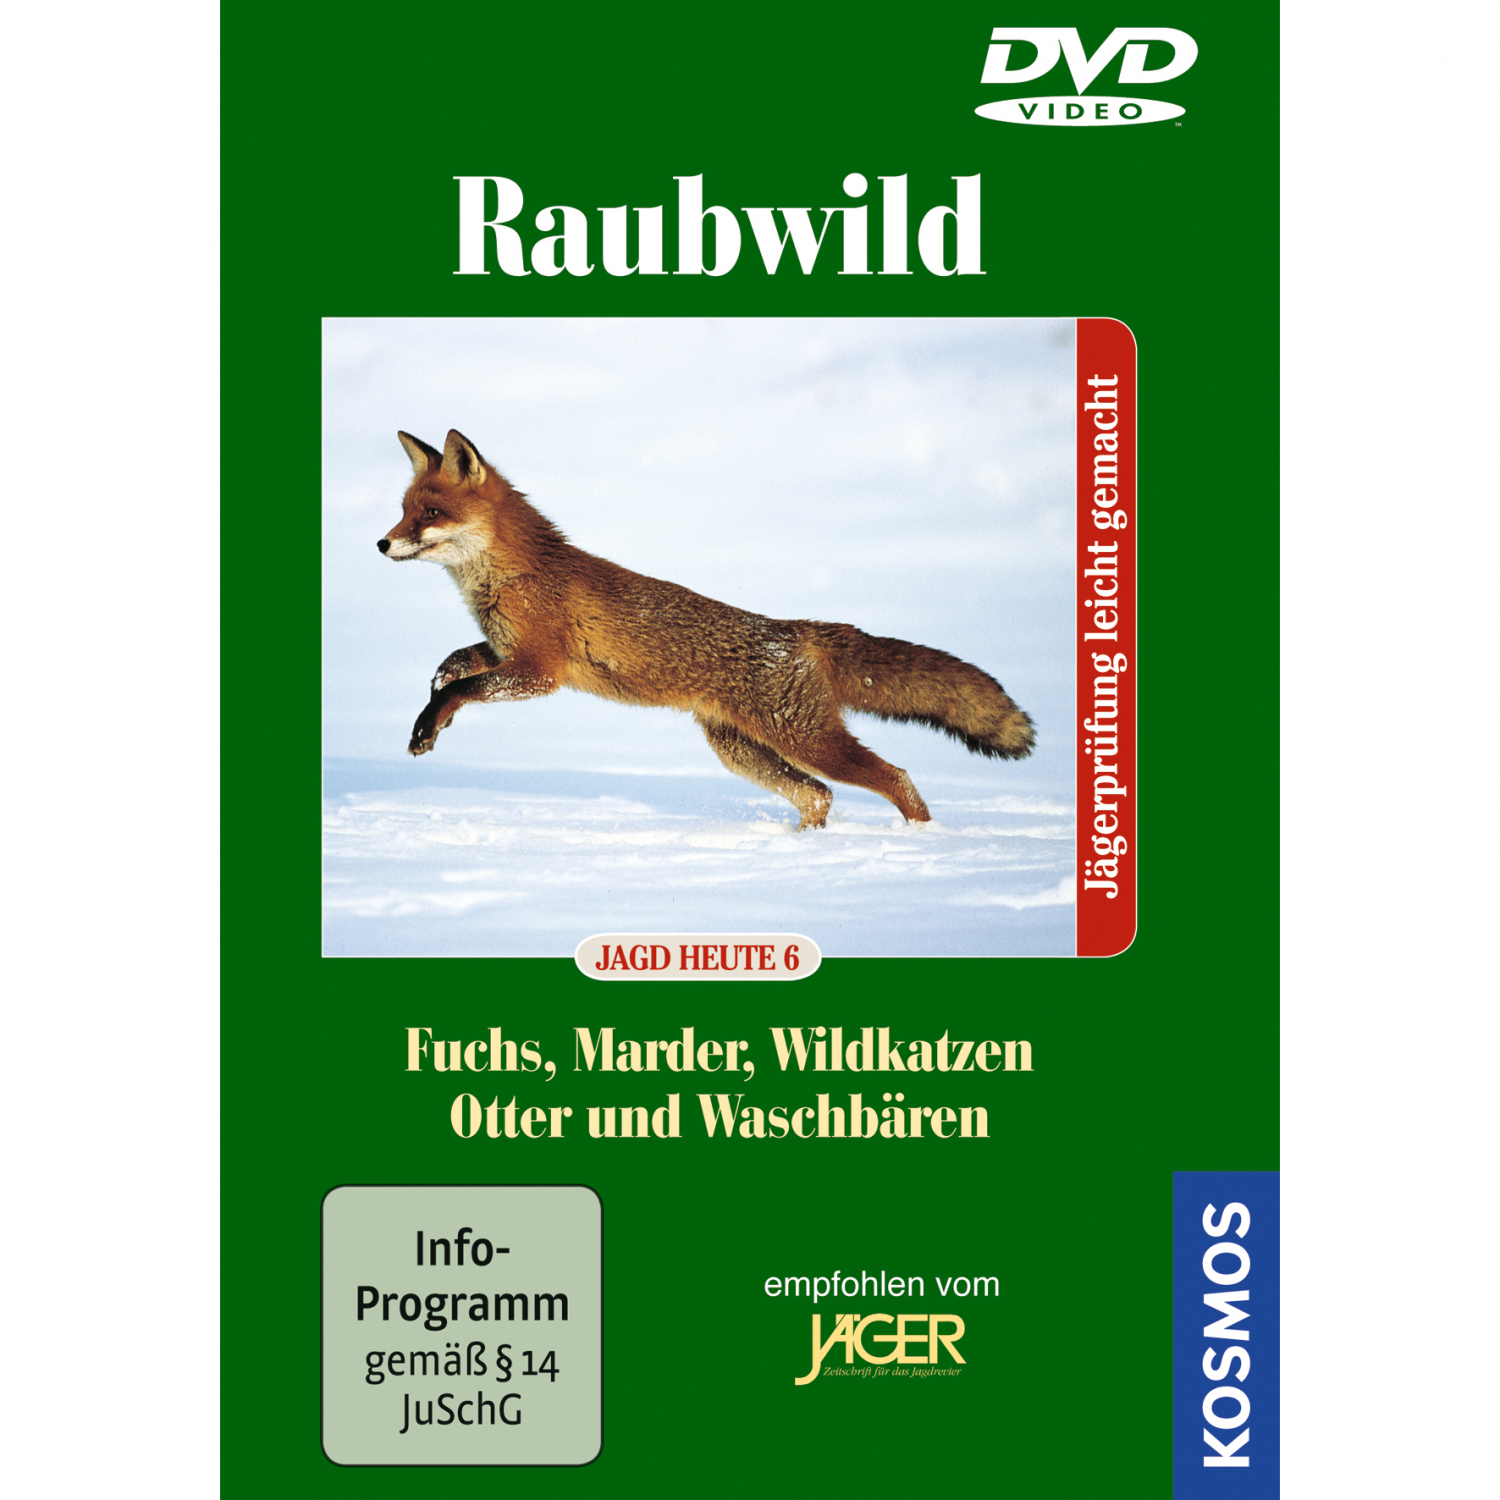 DVD Raubwild - Fuchs/Marder/Wildkatzen/Otter/Waschbären from "Kosmos" 